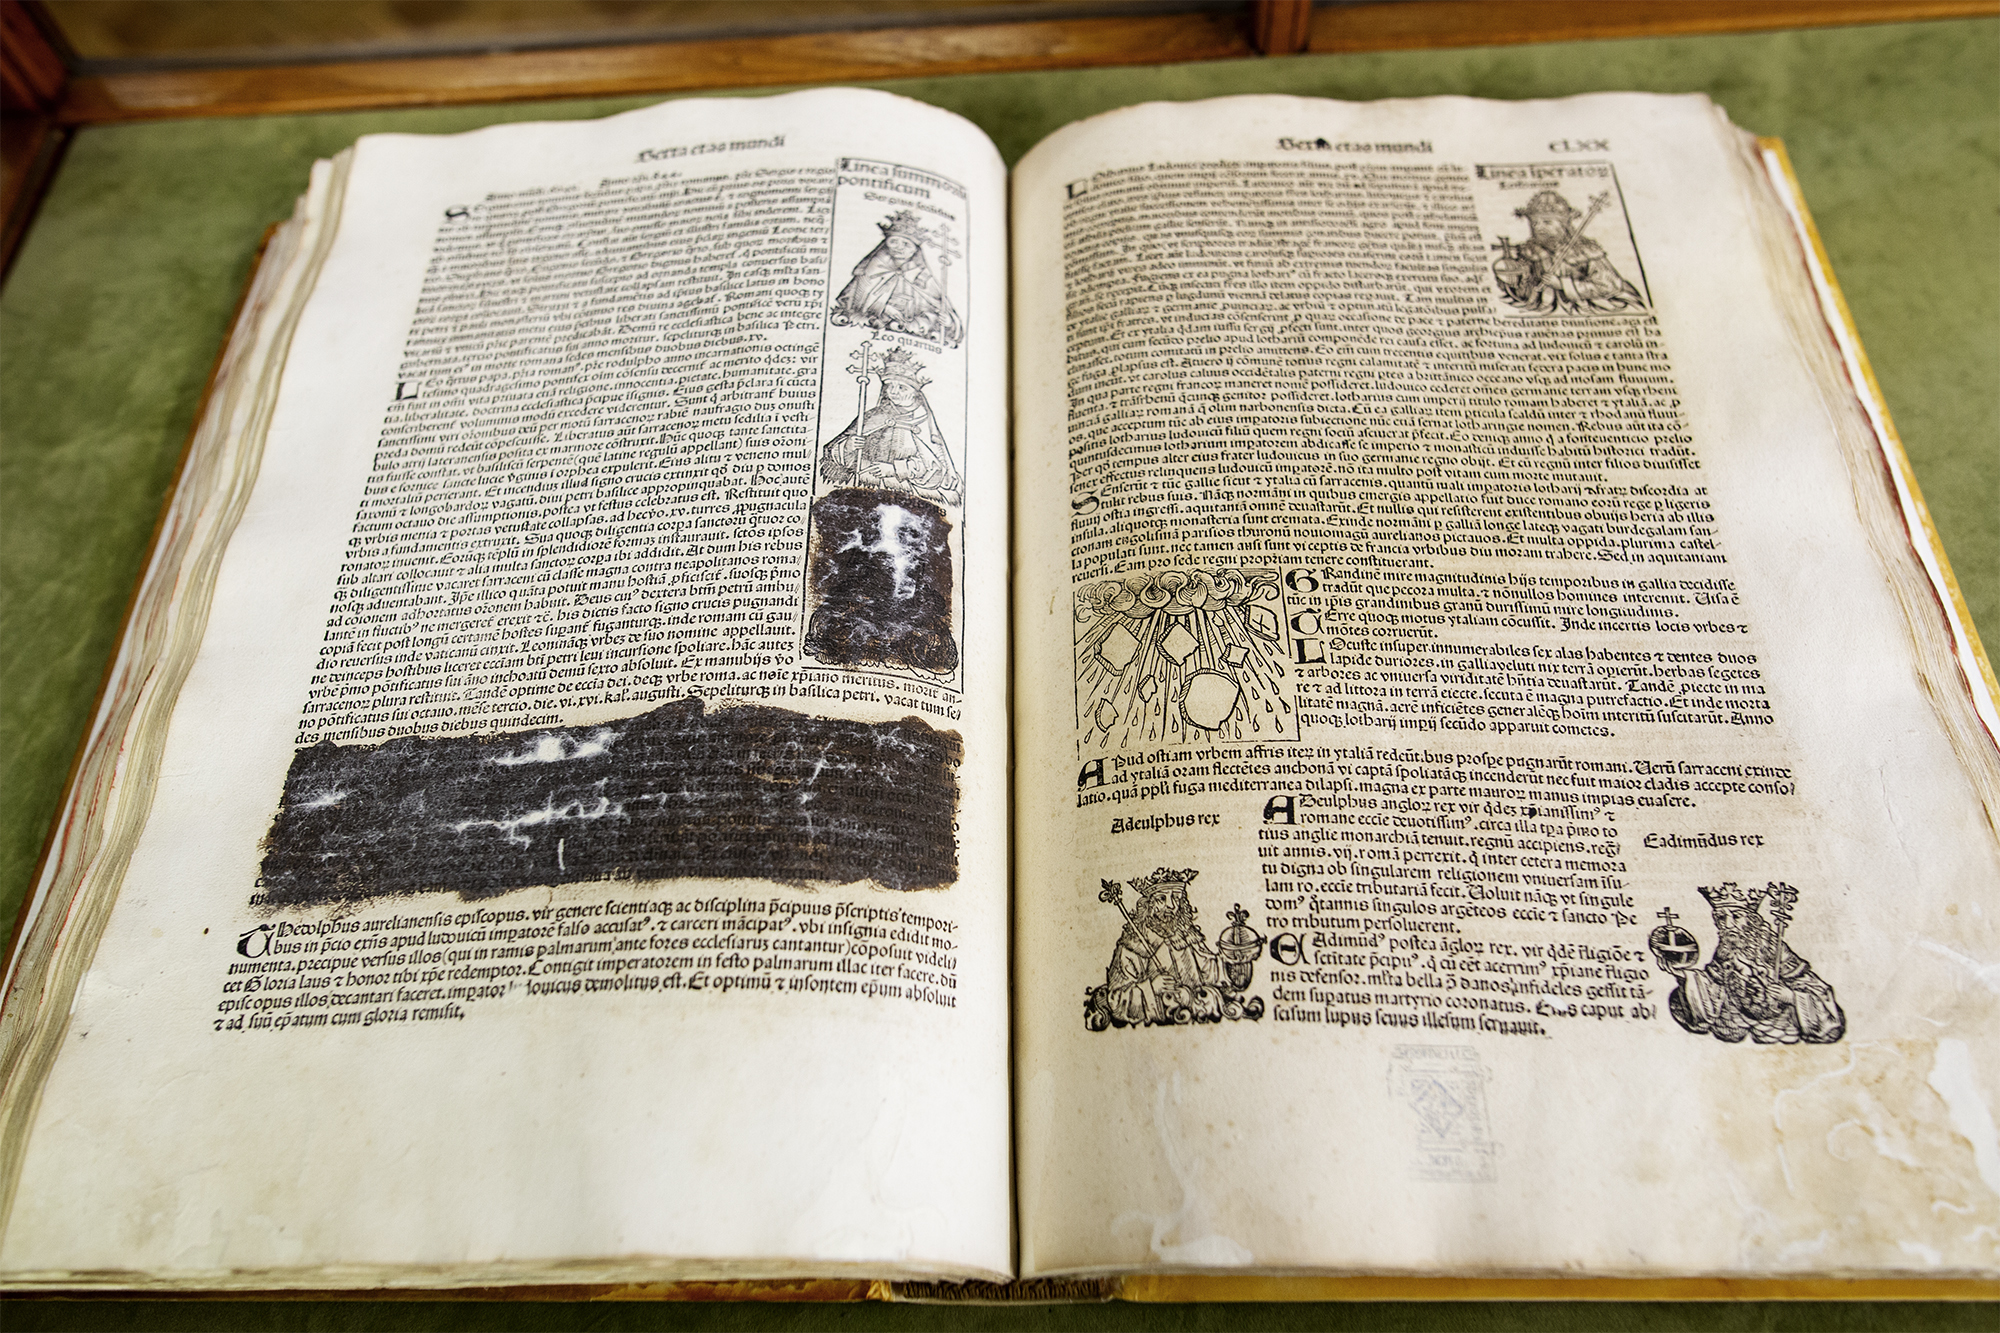 Las Crnicas de Nremberg expurgadas: el incunable del siglo XV que custodia la Universidad de Barcelona presenta pasajes censurados como el de la Papisa Juana.